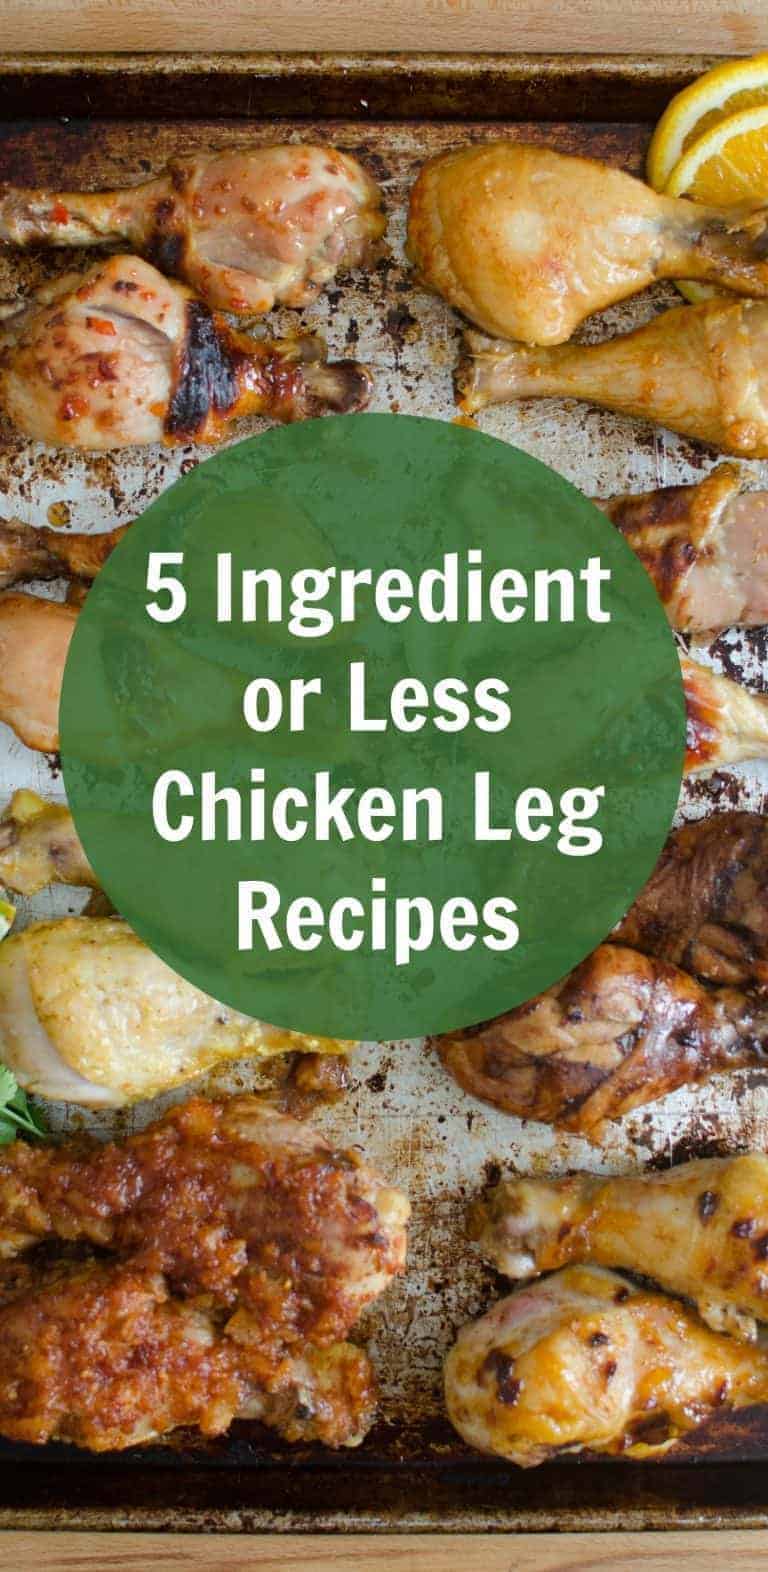 8 Must-Make Chicken Leg Recipes | How to Cook Chicken Legs 3 Ways